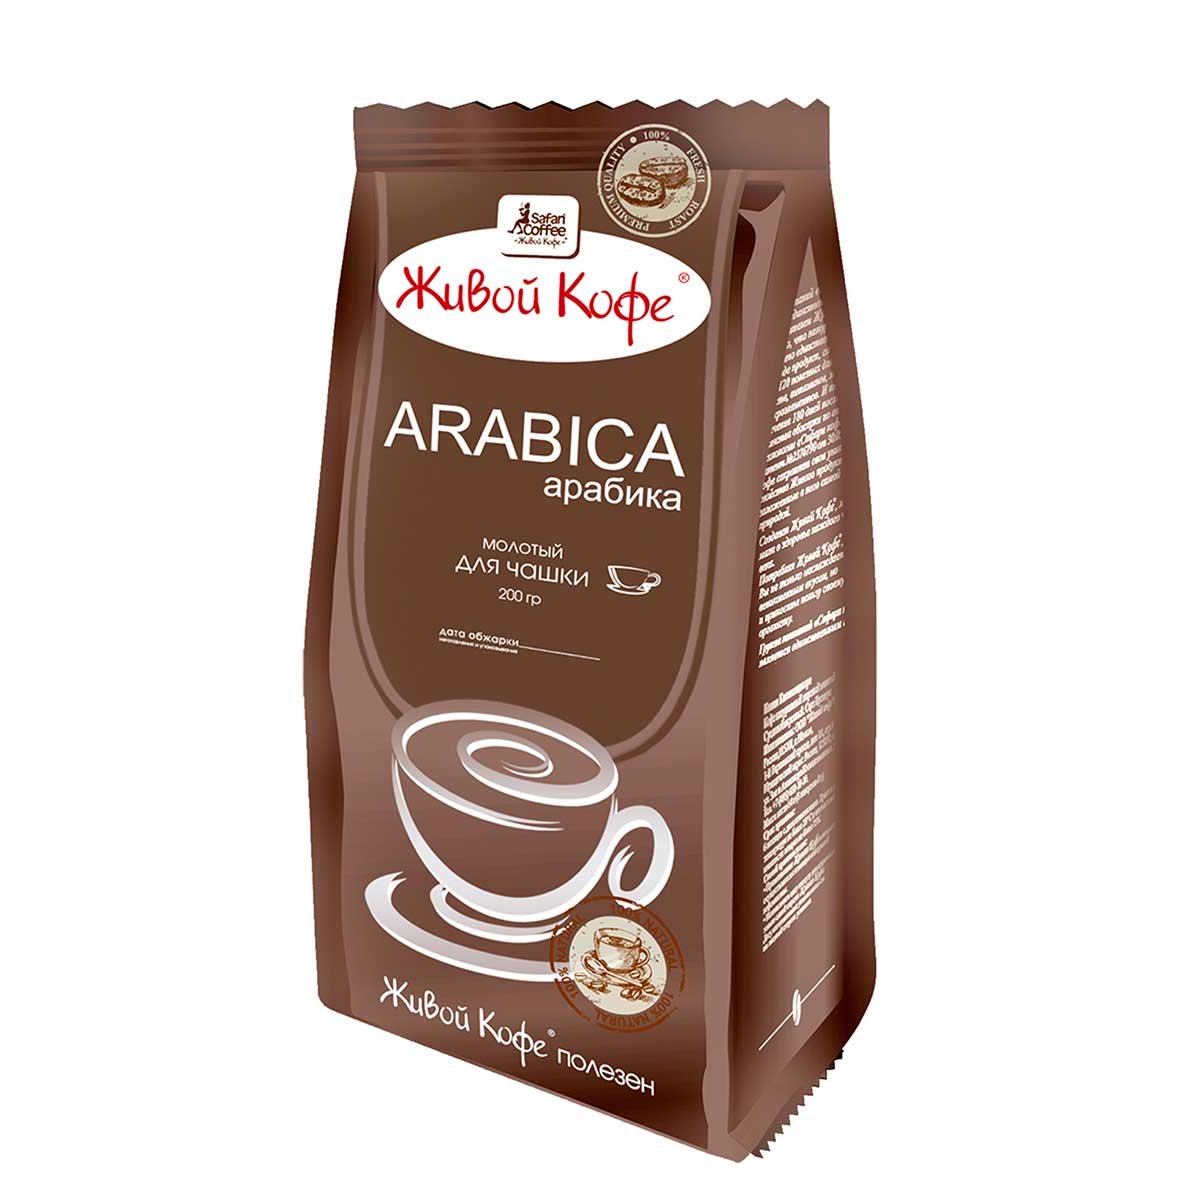 Молотый кофе 200 г. Кофе Arabica молотый живой 200гр. Кофе живой кофе, Арабика, молотый, 200г. Живой кофе Арабика молотый 200г. Живой кофе Арабика натур молотый 200.